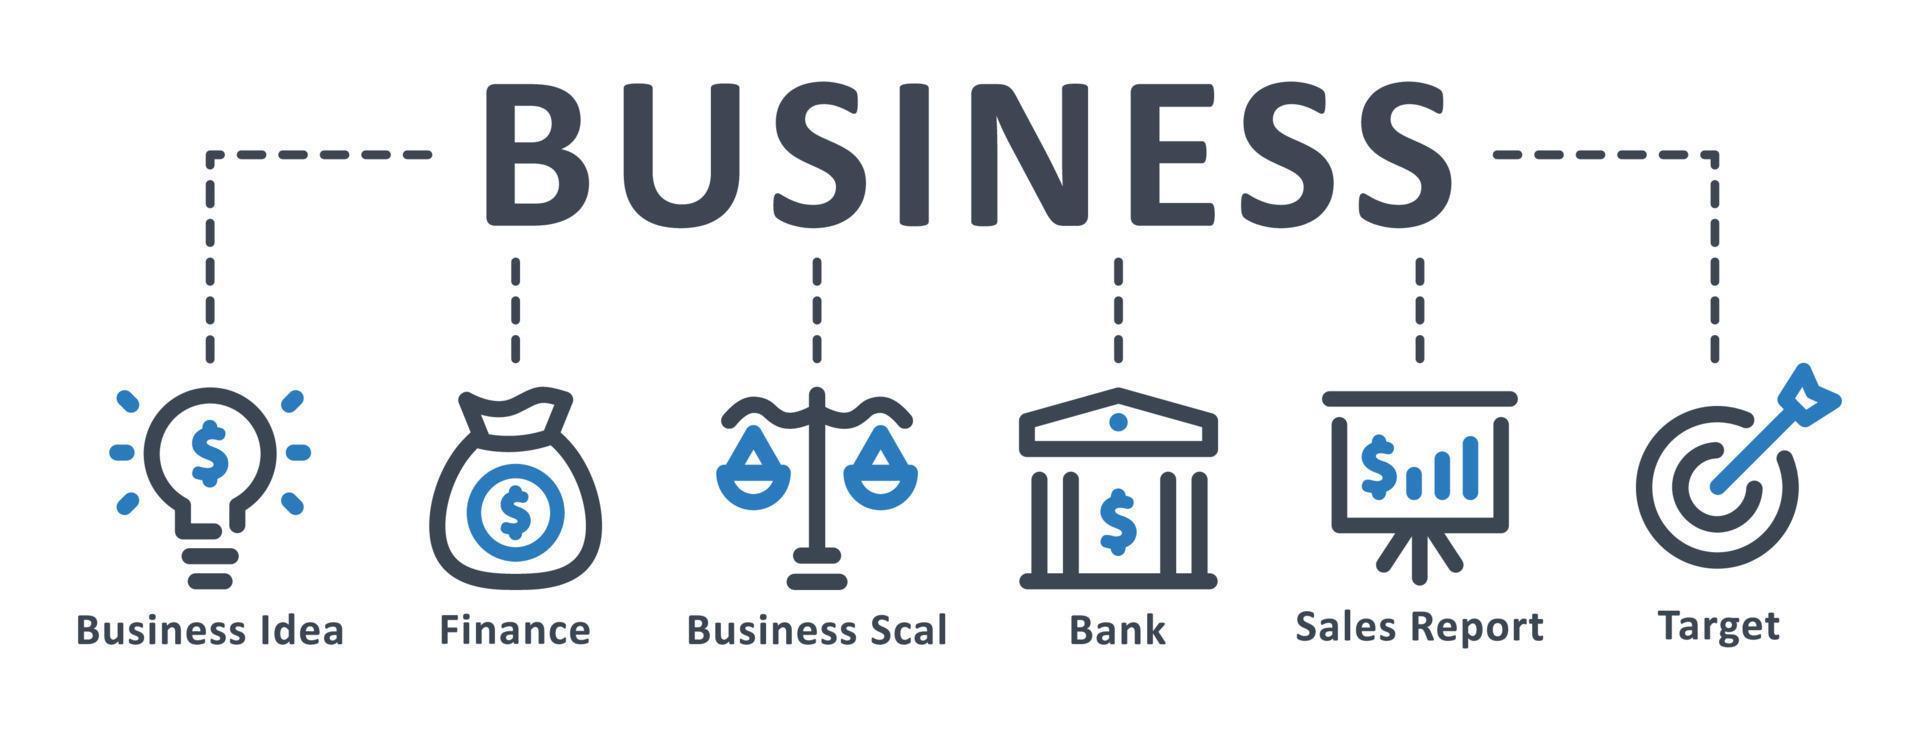 ícone de negócios - ilustração vetorial. negócios, ideia, finanças, investimento, objetivo, banco, infográfico, modelo, apresentação, conceito, banner, pictograma, conjunto de ícones, ícones. vetor